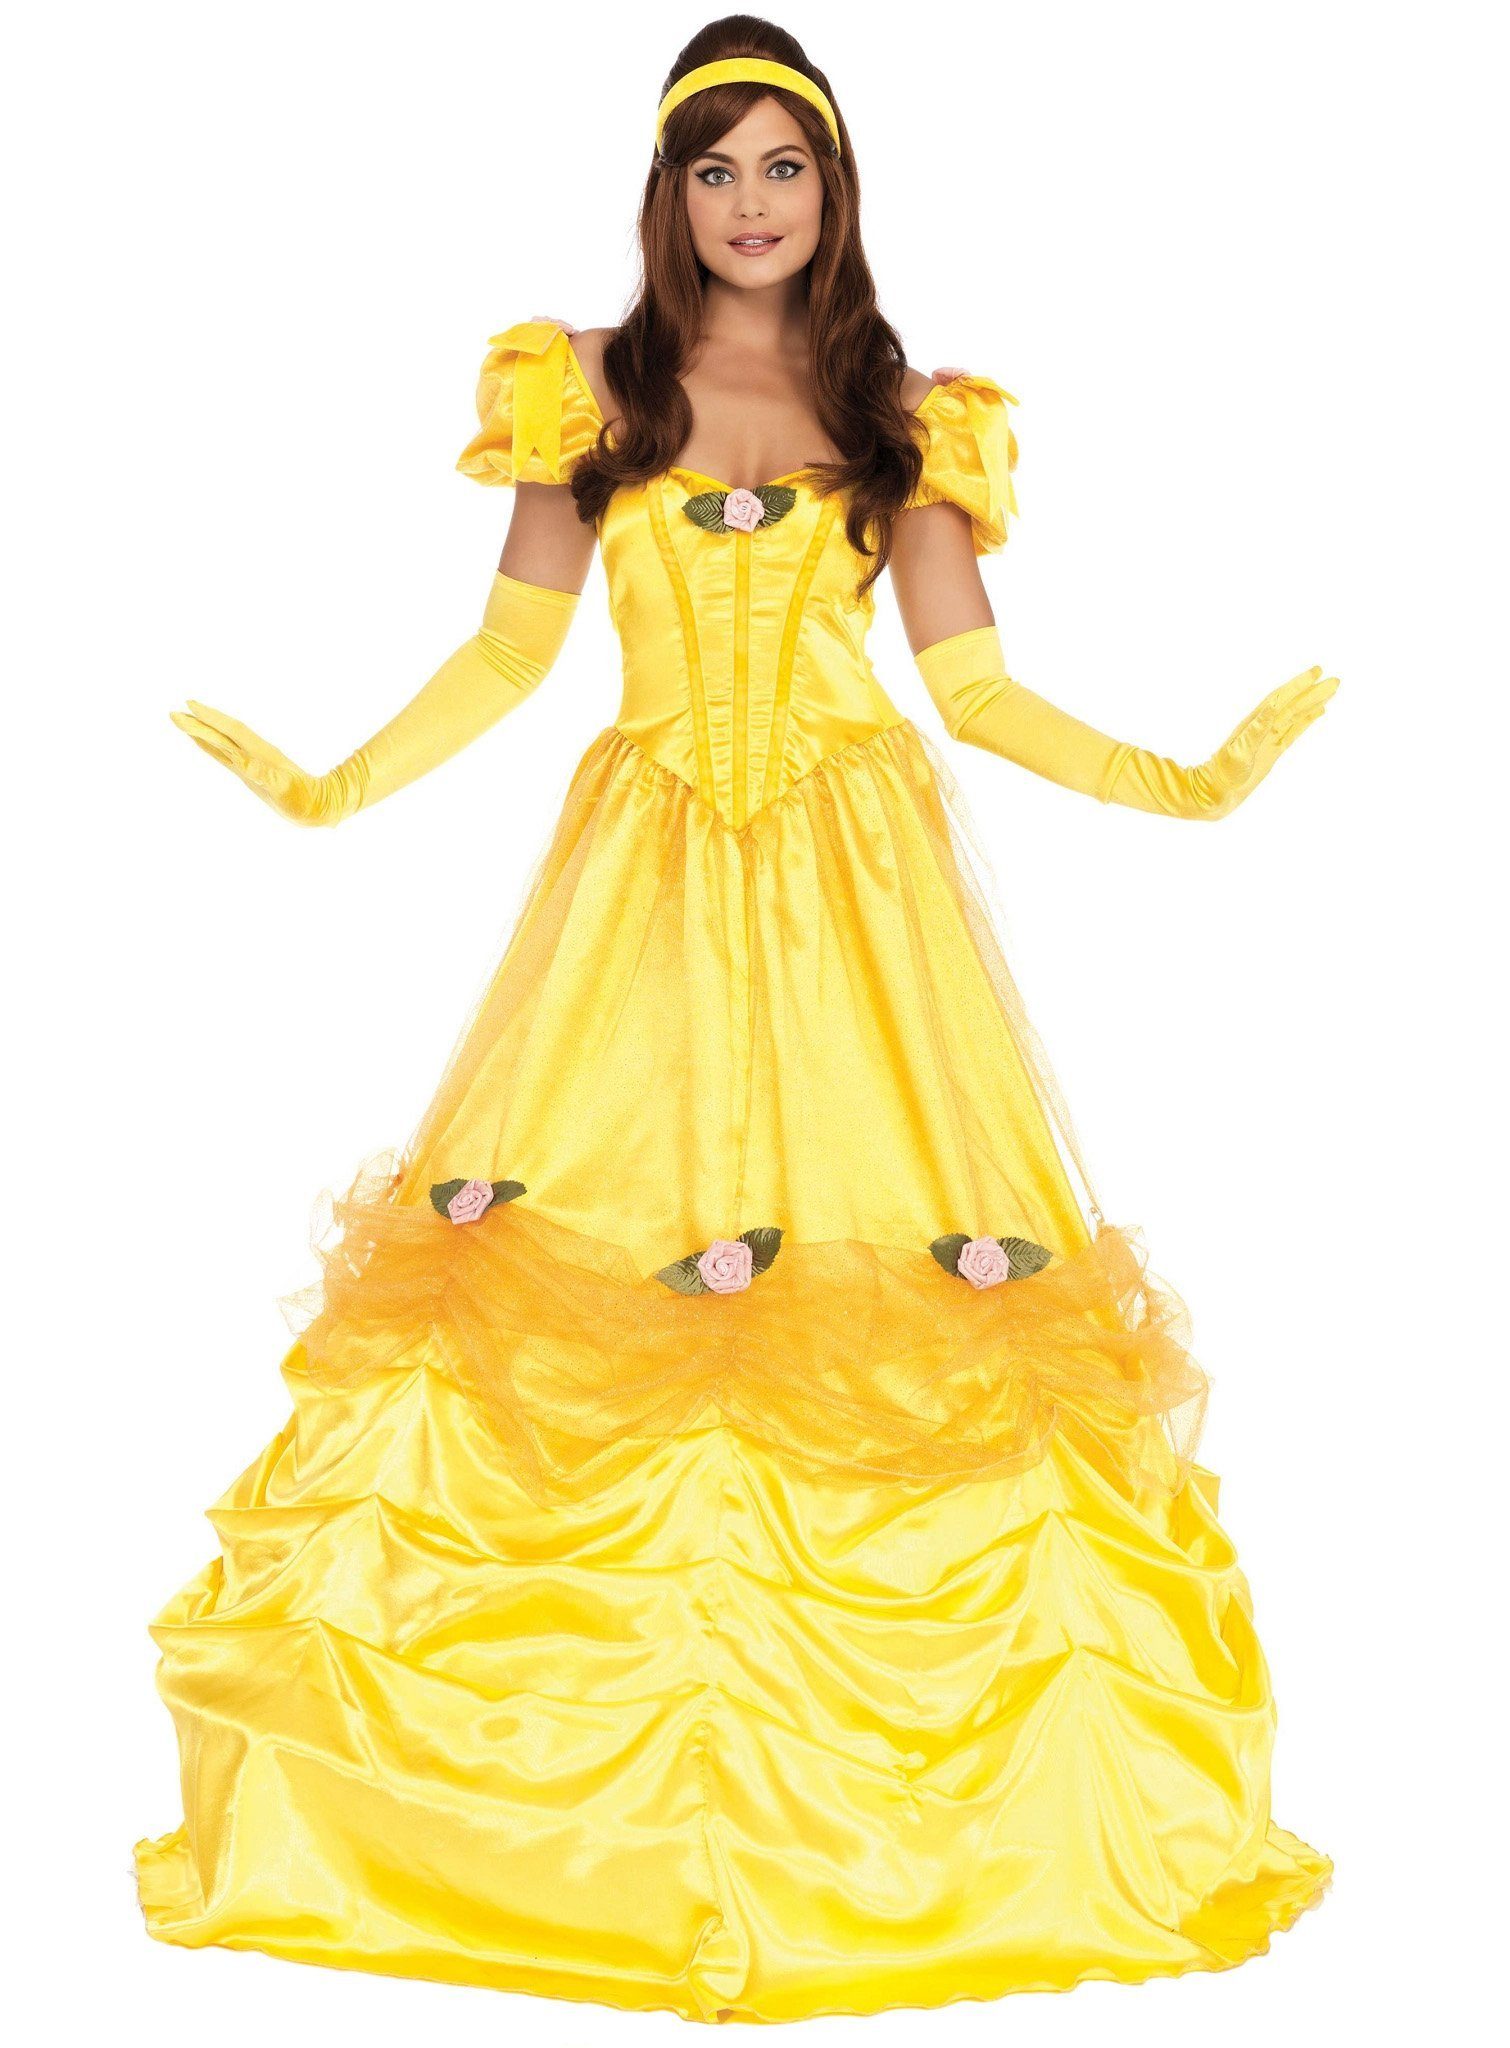 Leg Avenue Kostüm Bezaubernde Belle Kostüm, Berauschendes Ballkleid für die märchenhafte Beauty